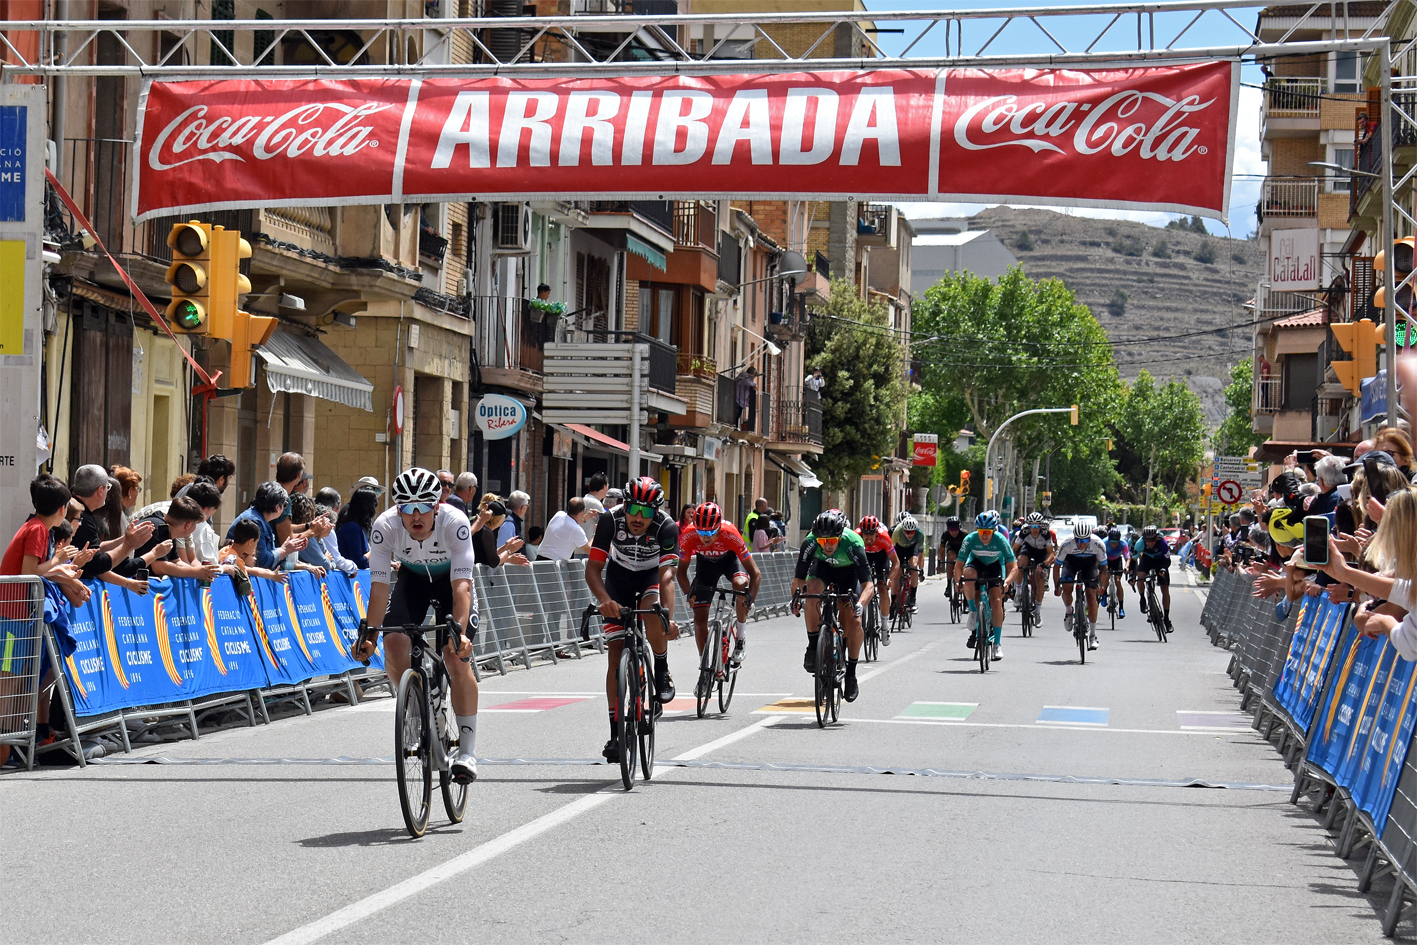 Arribada de la 7a Cursa Ciclista Vila de Súria, dins del calendari de  Grans Clàssiques de Catalunya-7è Trofeu Joan Casadevall.